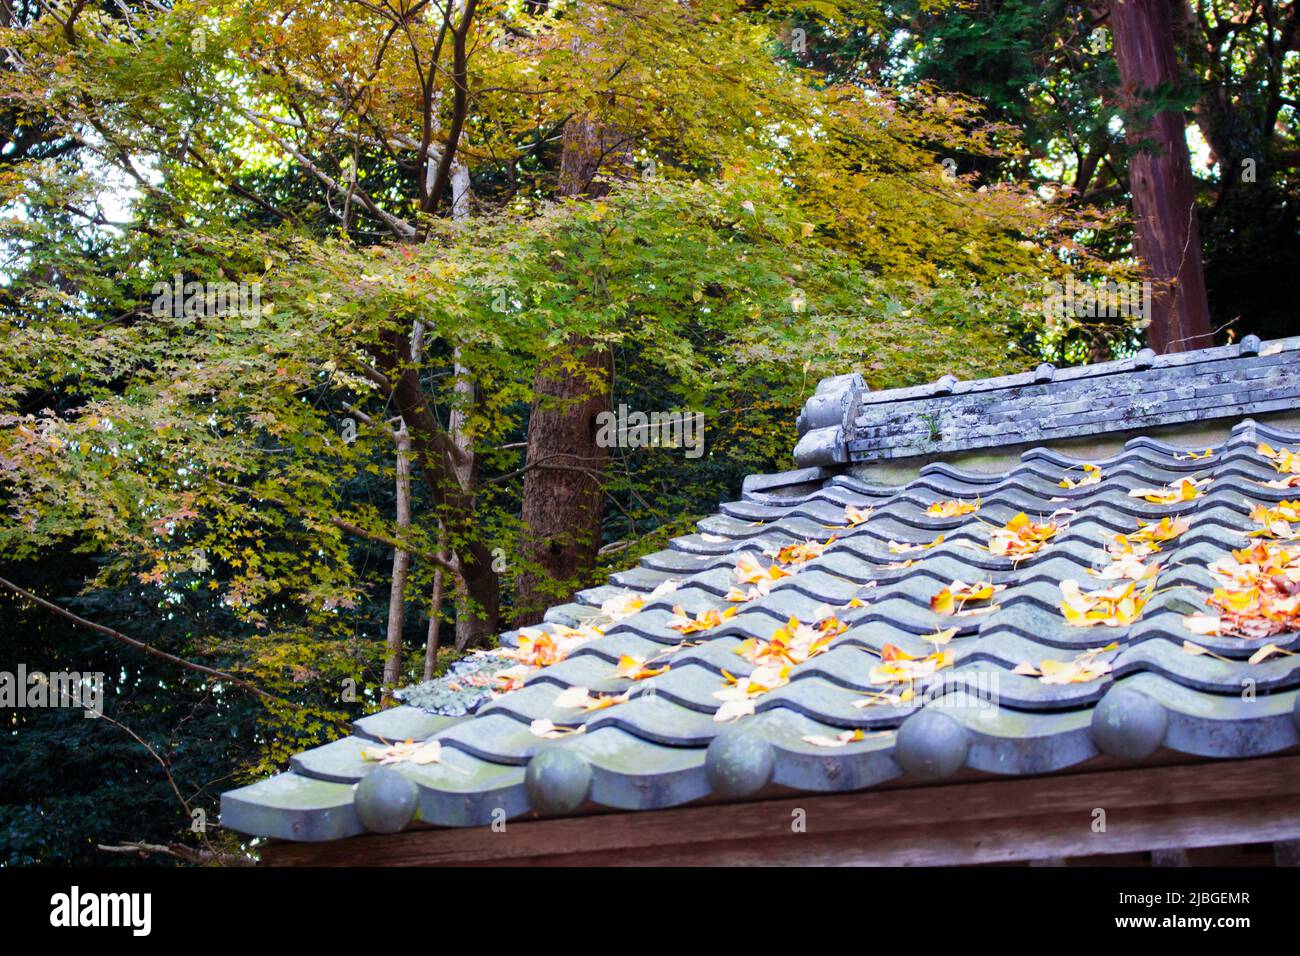 Le toit avec tuiles japonaises (kawaraa) en automne, Japon. Il y a des feuilles d'érable sur le toit à l'image. Banque D'Images